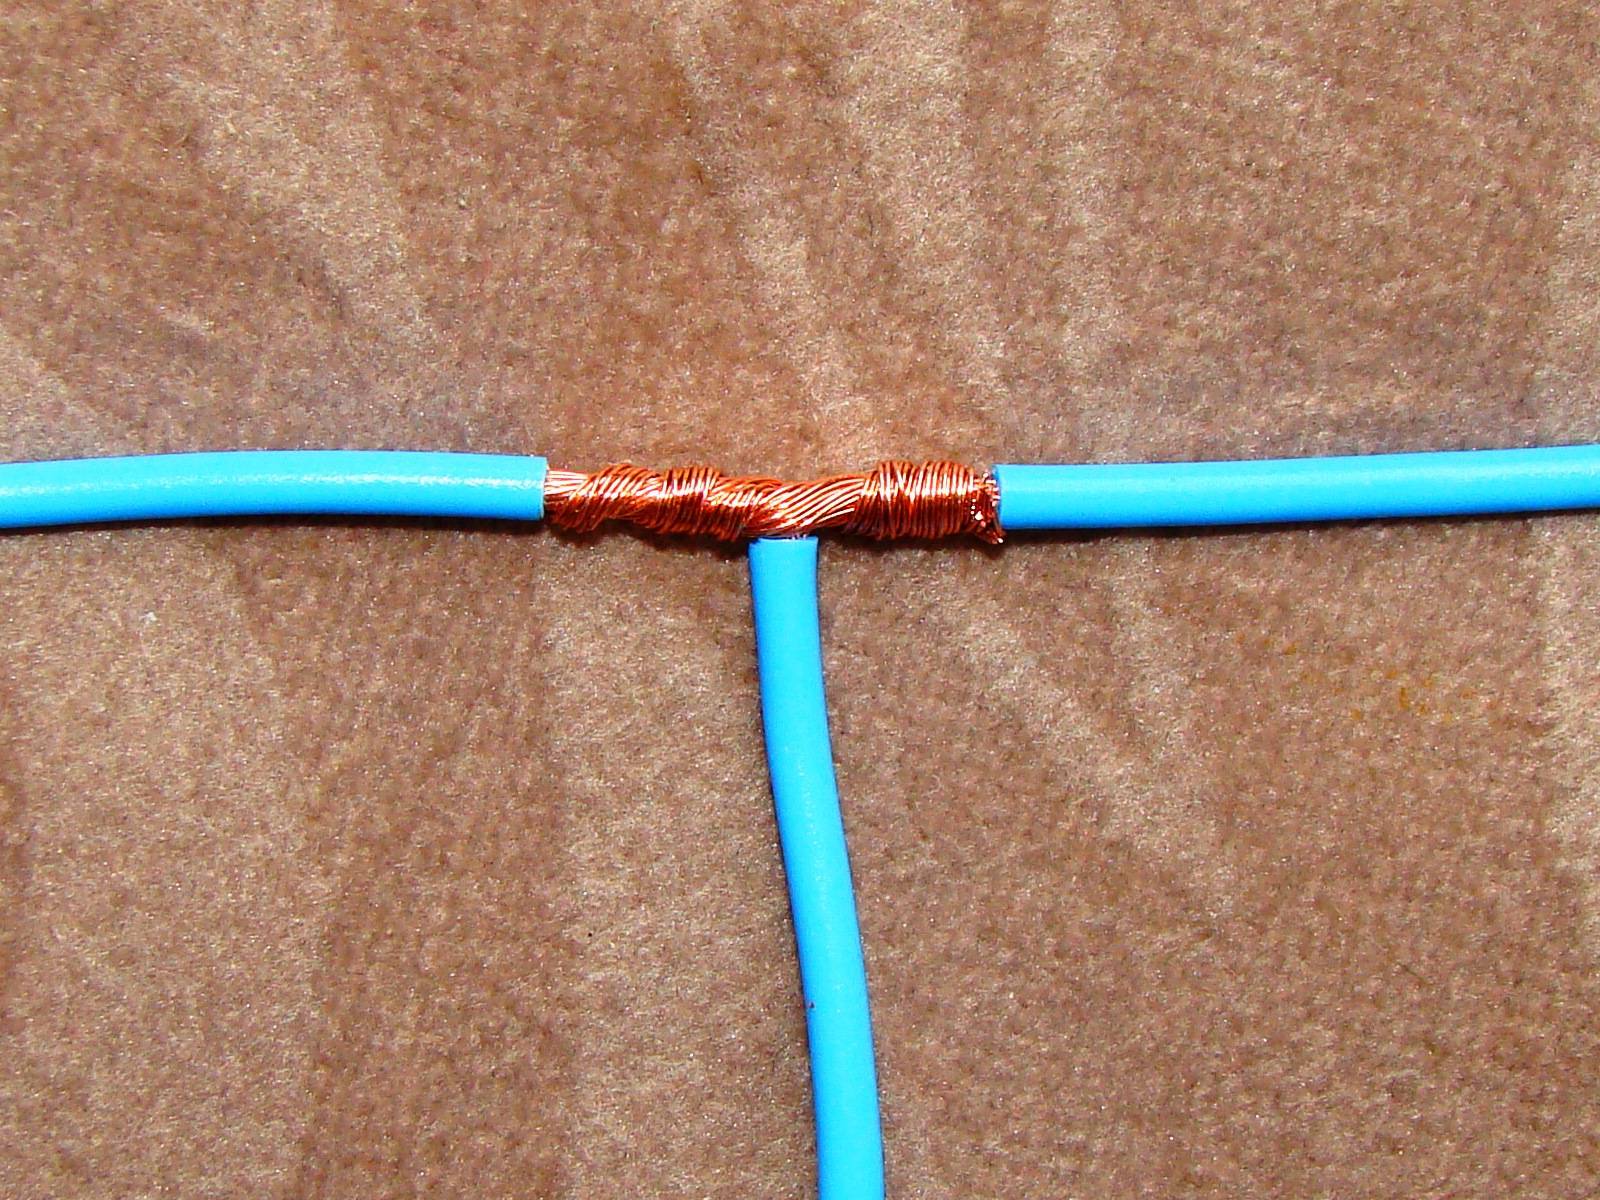 Как правильно соединять электрические провода электропроводки